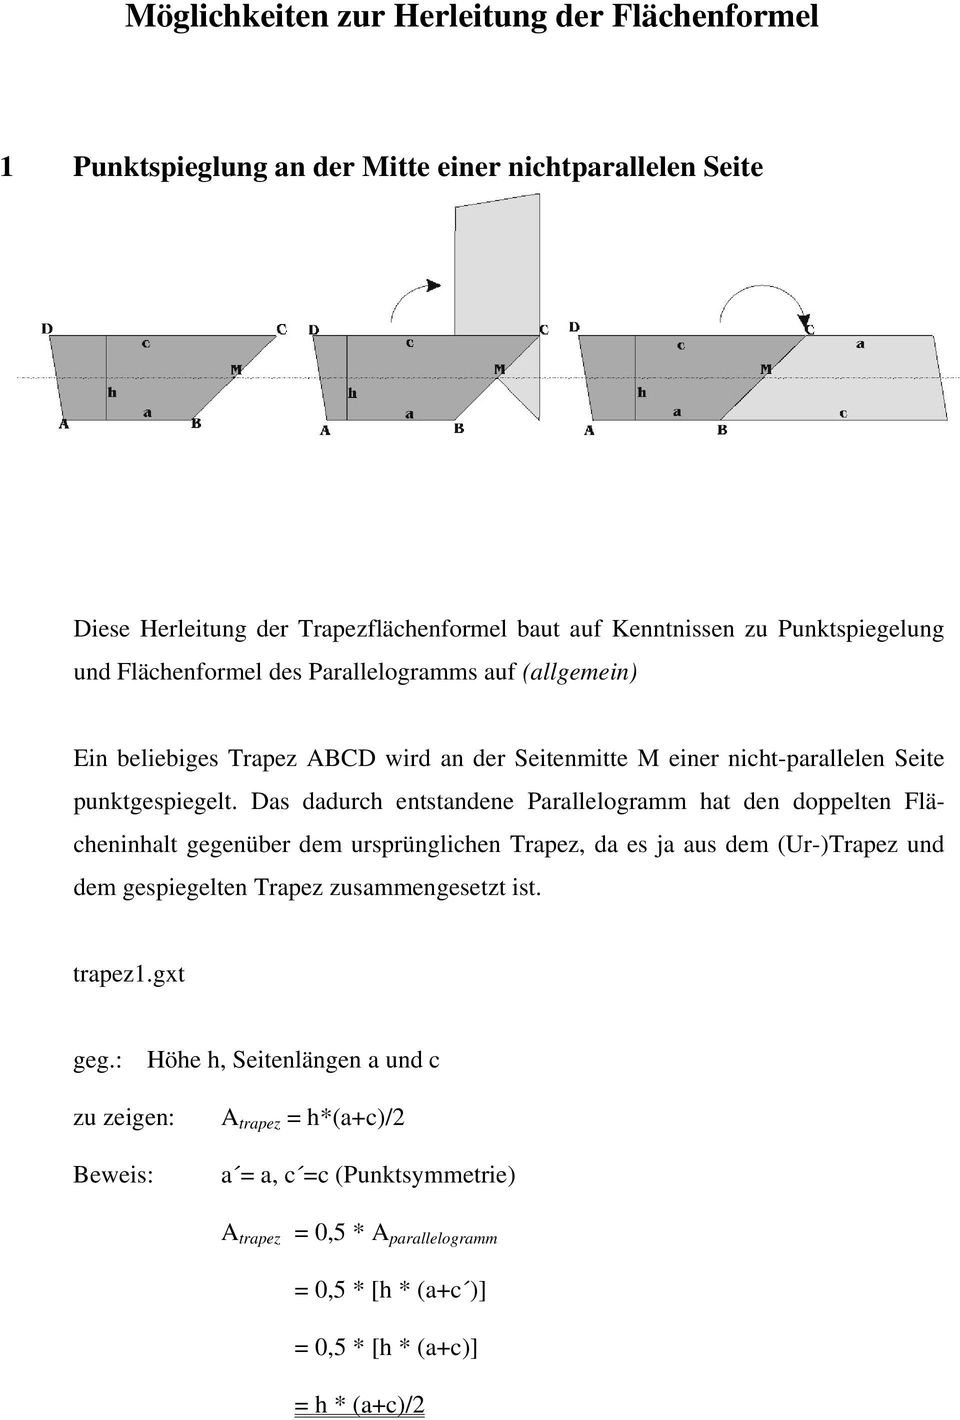 Das dadurch entstandene Parallelogramm hat den doppelten Flächeninhalt gegenüber dem ursprünglichen Trapez, da es ja aus dem (Ur-)Trapez und dem gespiegelten Trapez